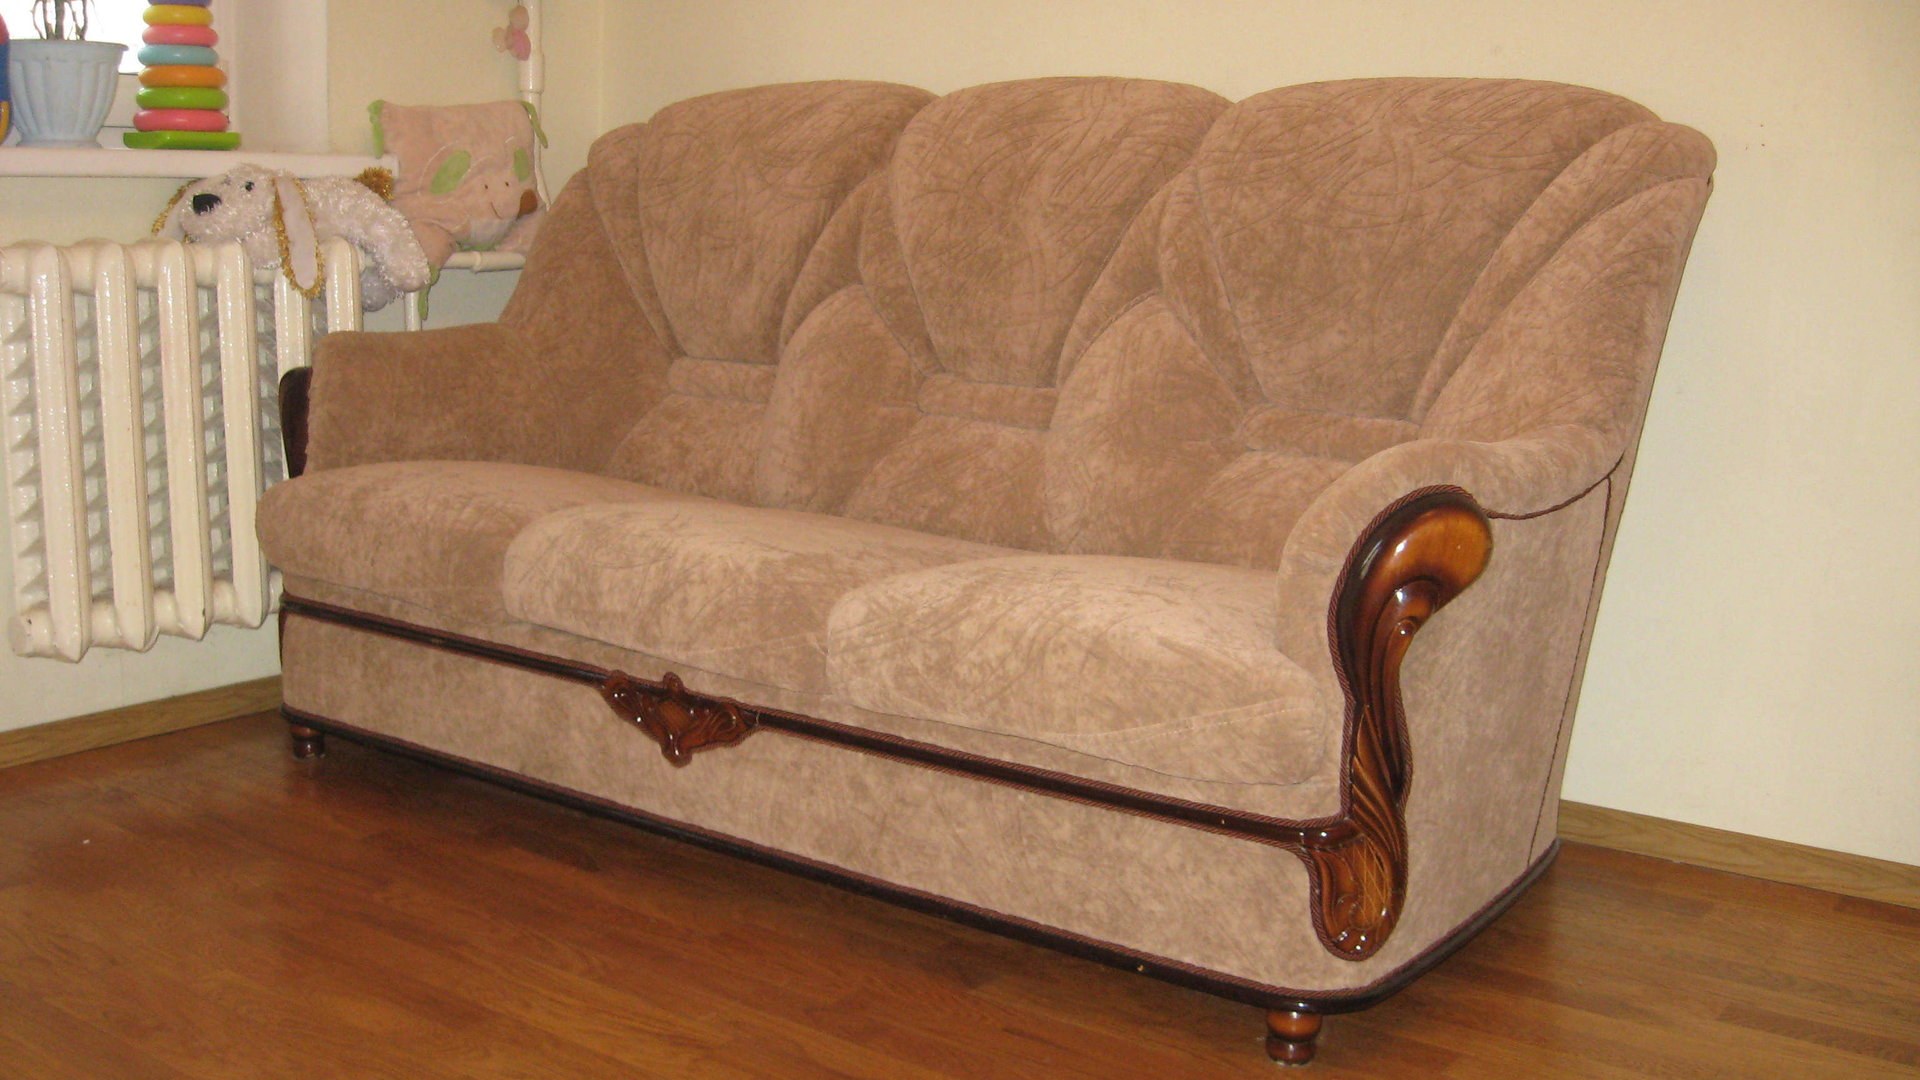 Купить б у мебель диваны. Бэушный диван. Мягкая мебель б/у. Старые диваны и кресла. Диван в хорошем состоянии.